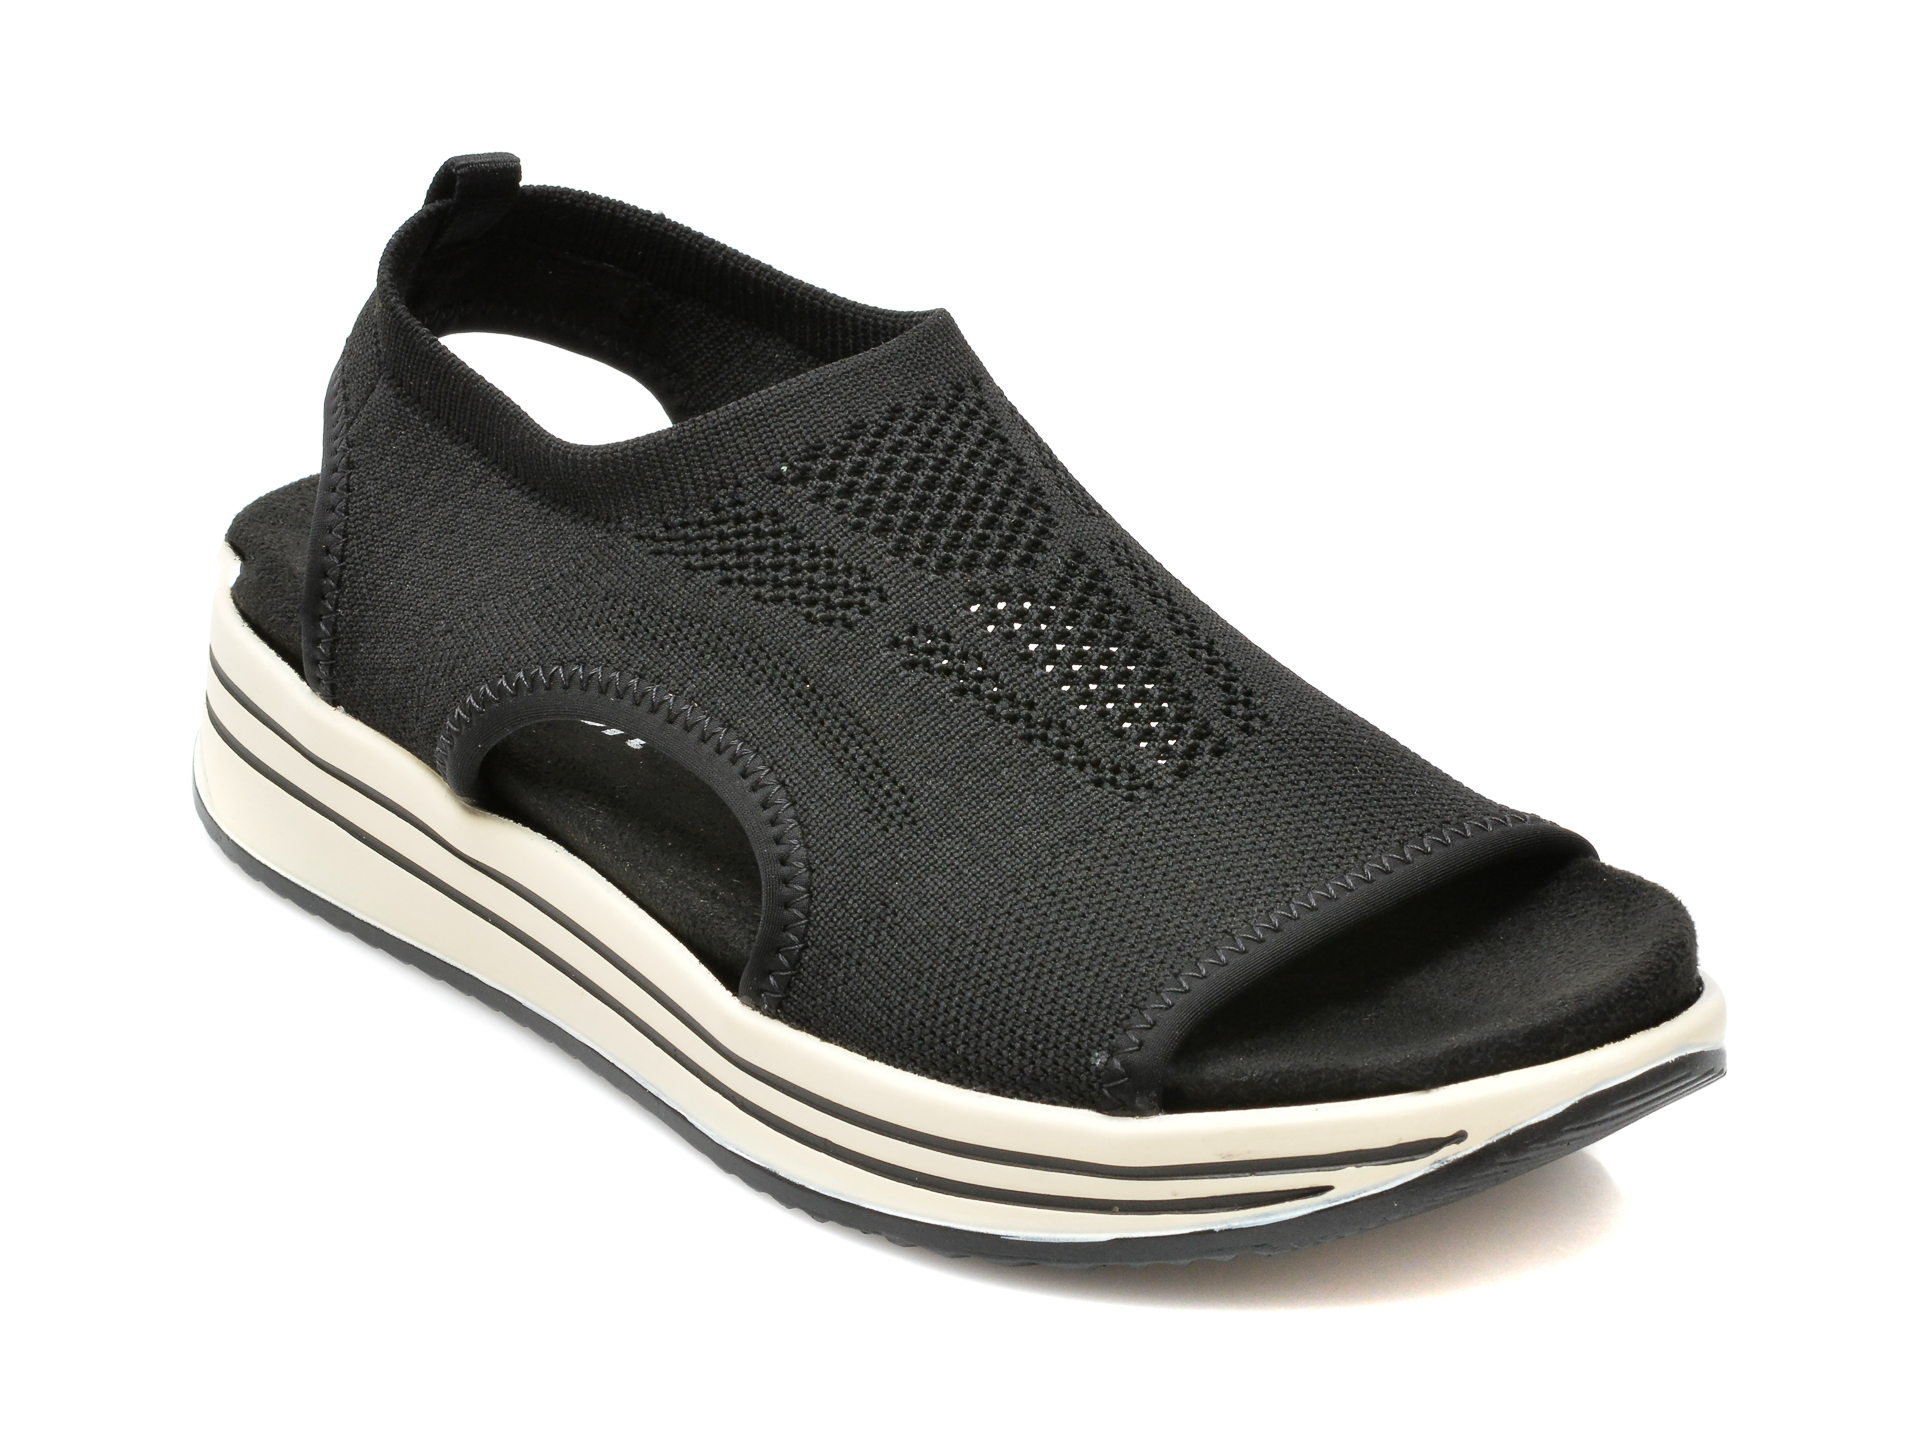 Sandale REMONTE negre, R2955, din material textil otter.ro otter.ro